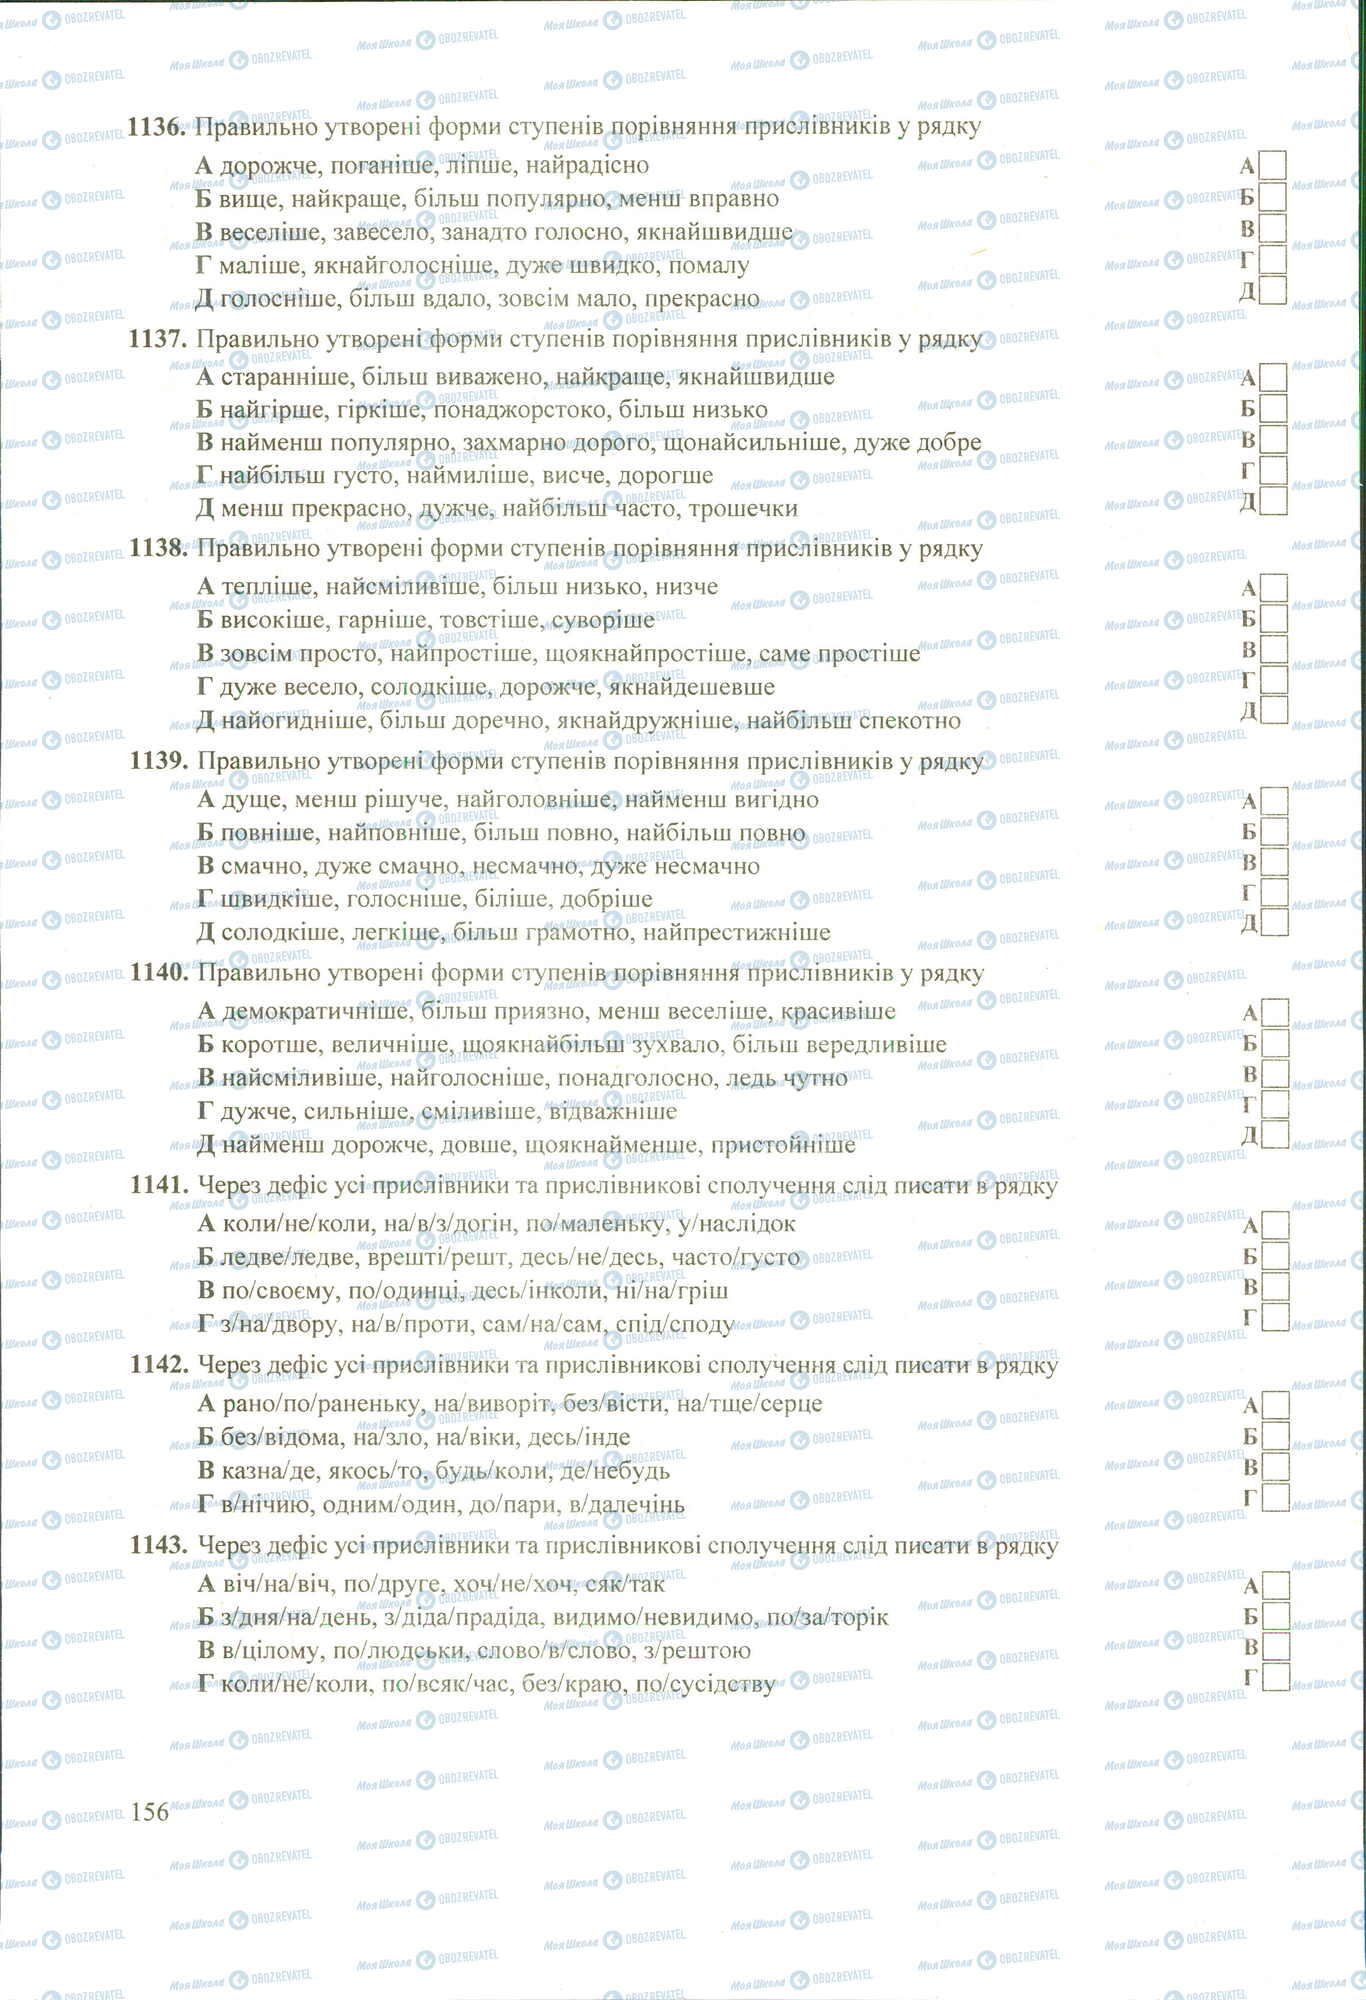 ЗНО Укр мова 11 класс страница 1136-1143